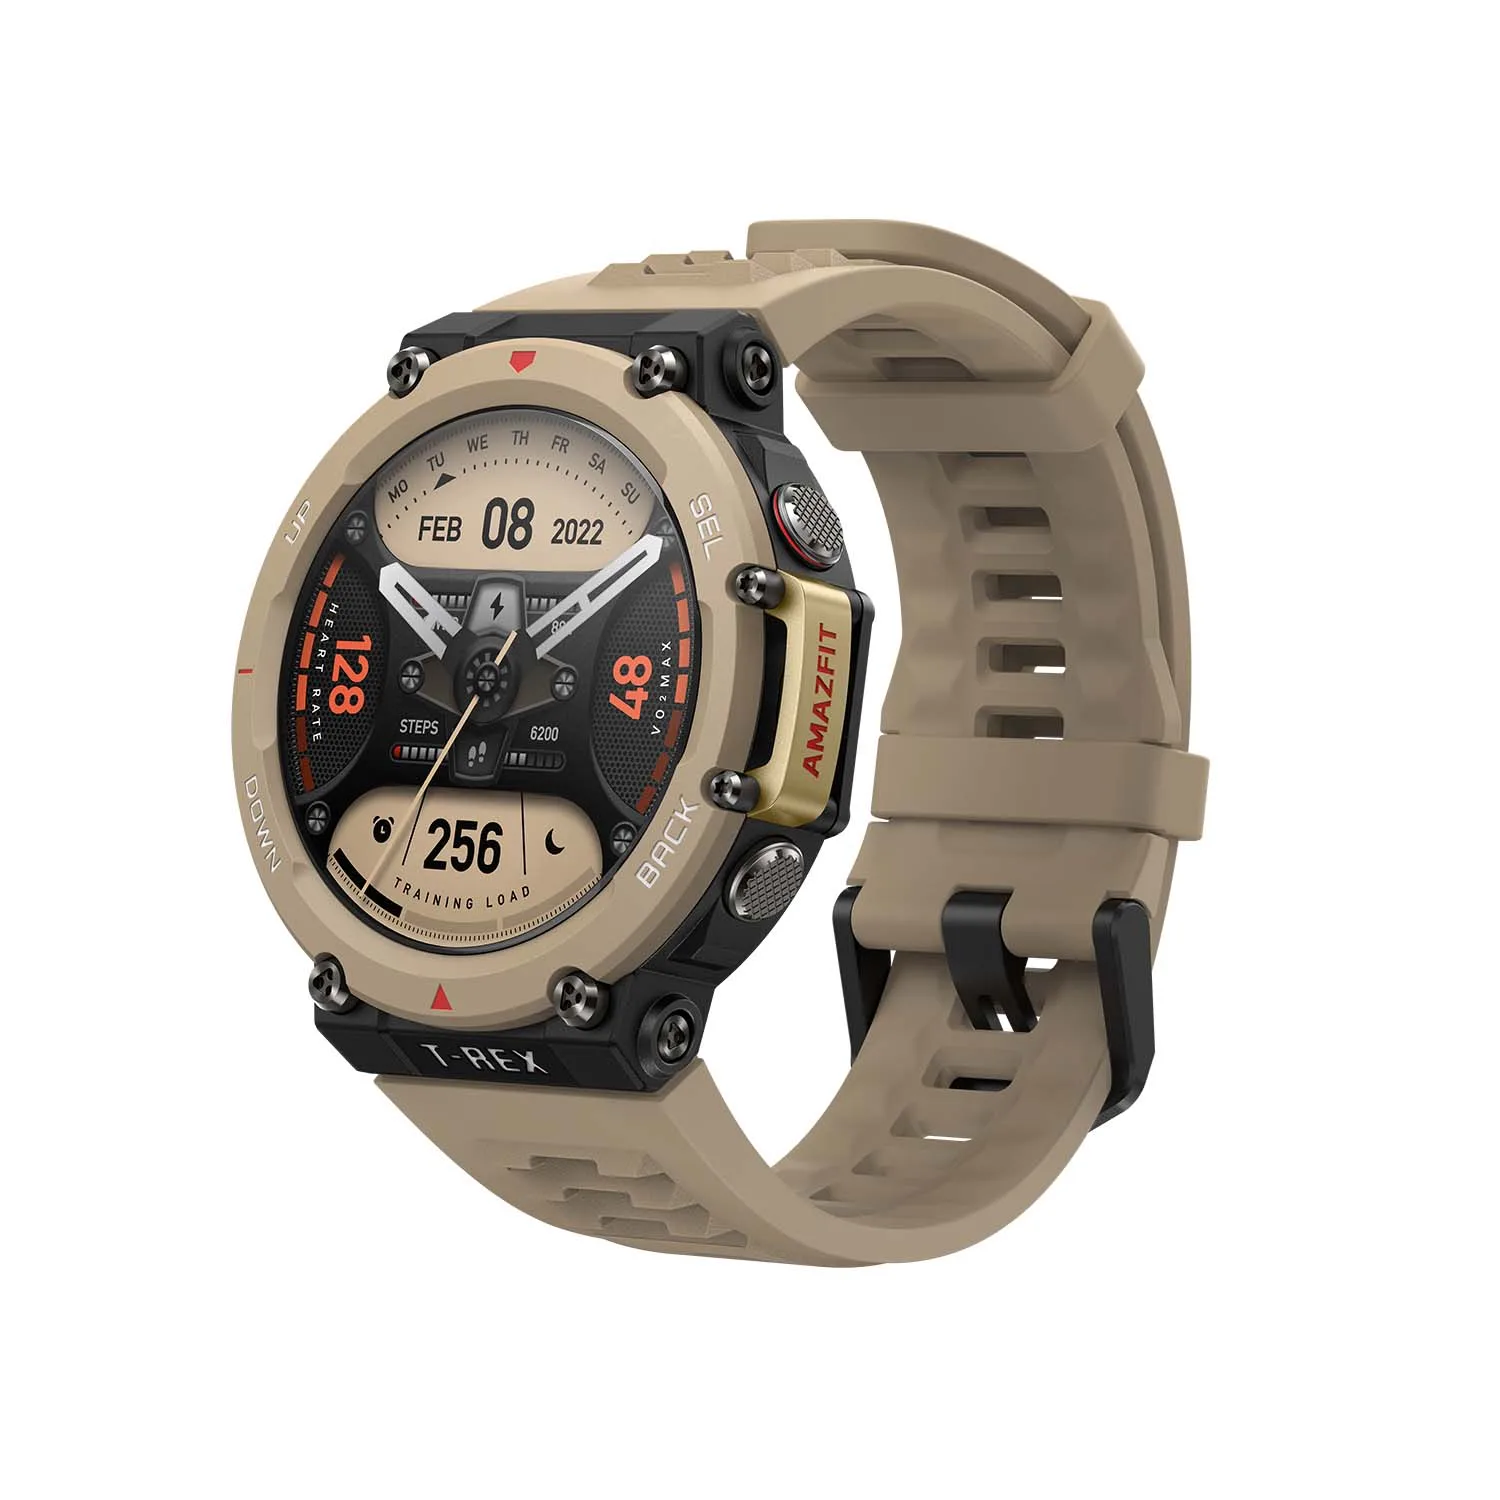 

Novo amazfit t rex 2 robusto ao ar livre gps smartwatch 24 dias de vida útil da bateria 150 + built-in esportes modos relógio in